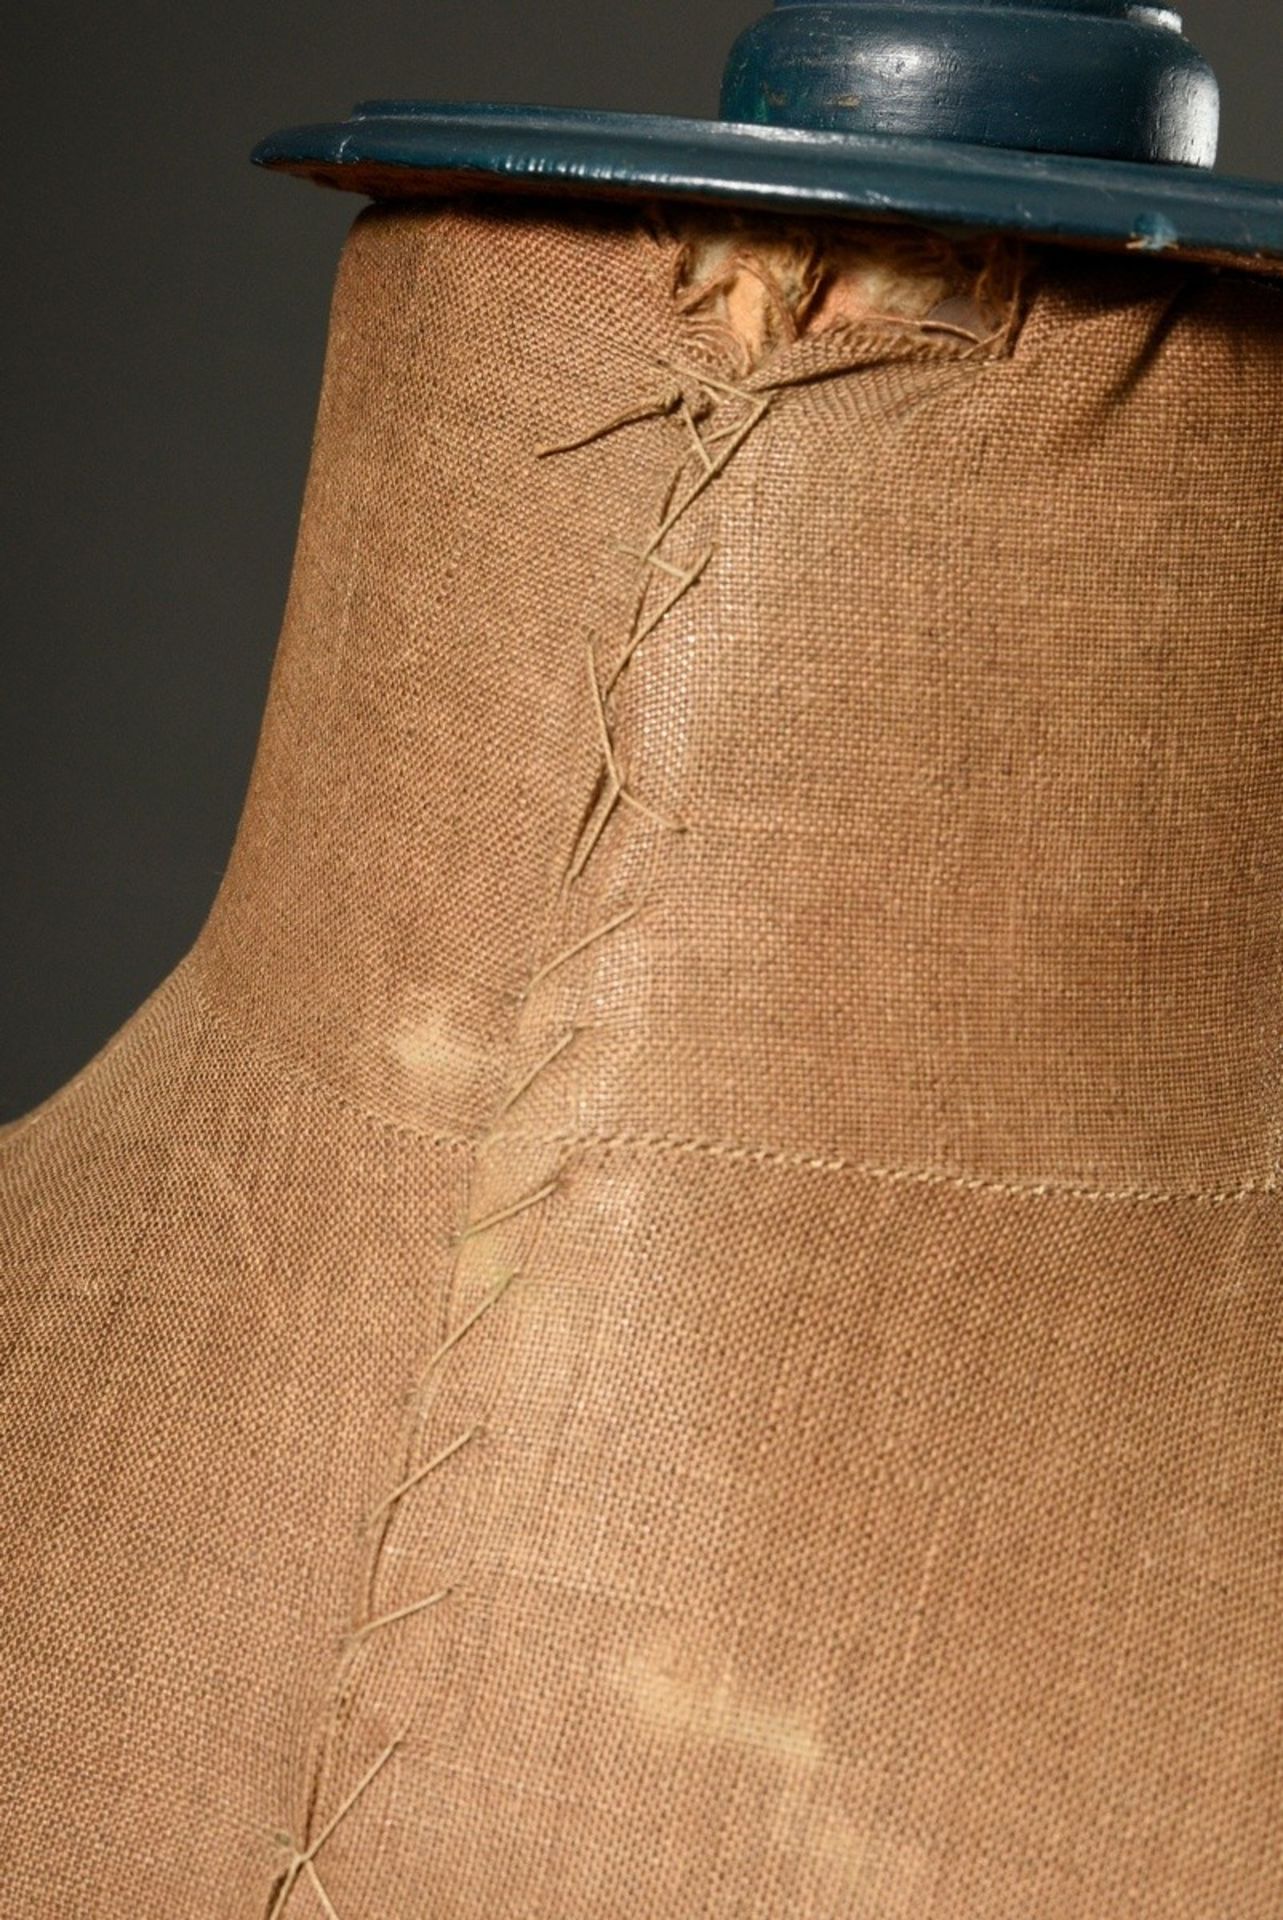 Verstellbare Schneiderpuppe mit Leinen bezogener Büste auf gedrechseltem Fuß, petrolfarben gefasst, - Bild 6 aus 7